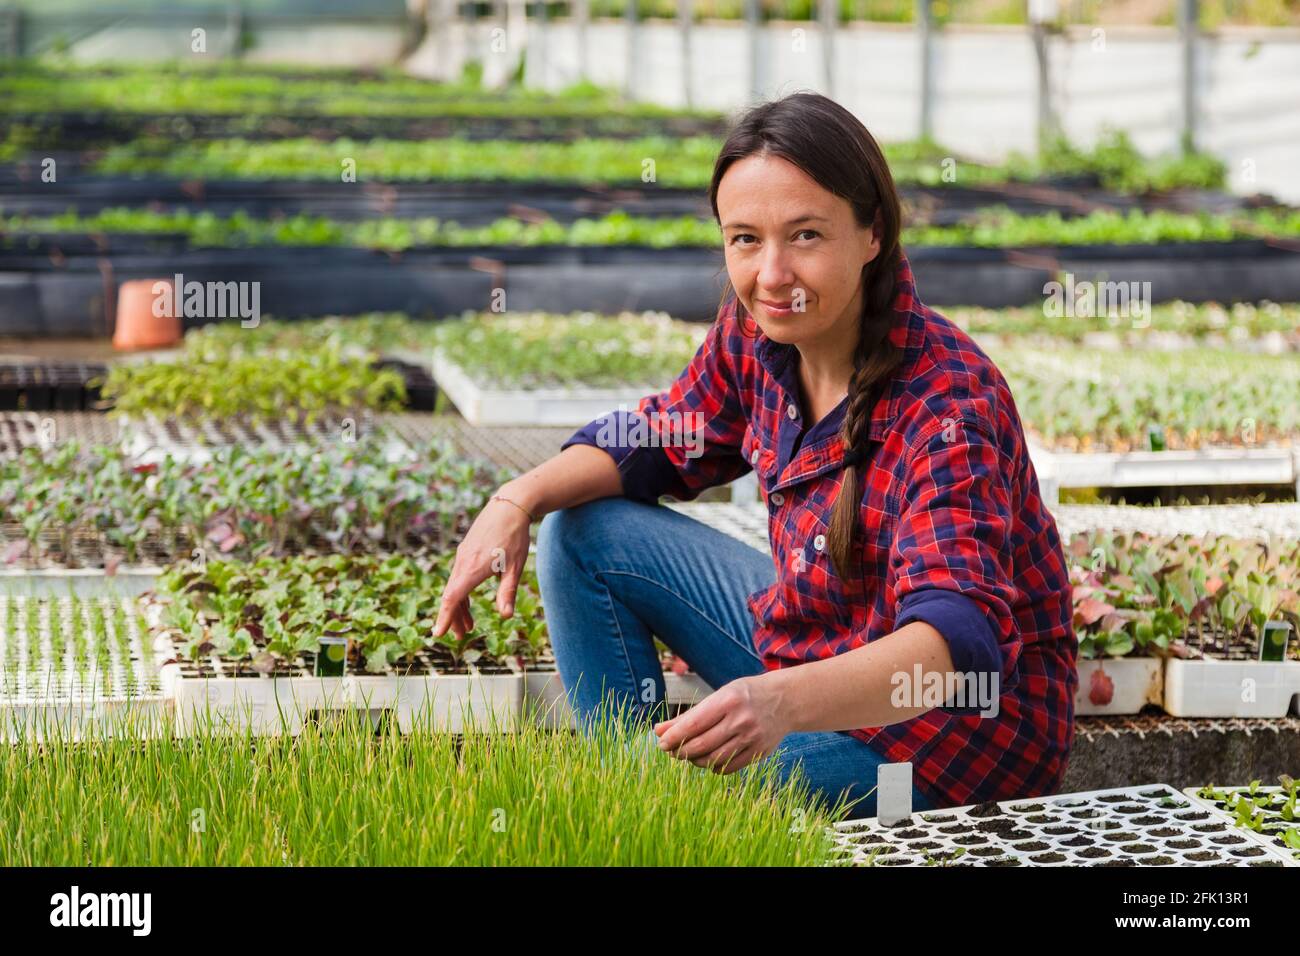 Ritratto candida di donna felice che lavora in una serra. Concetto: Agricoltura sostenibile, industrie alimentari naturali Foto Stock